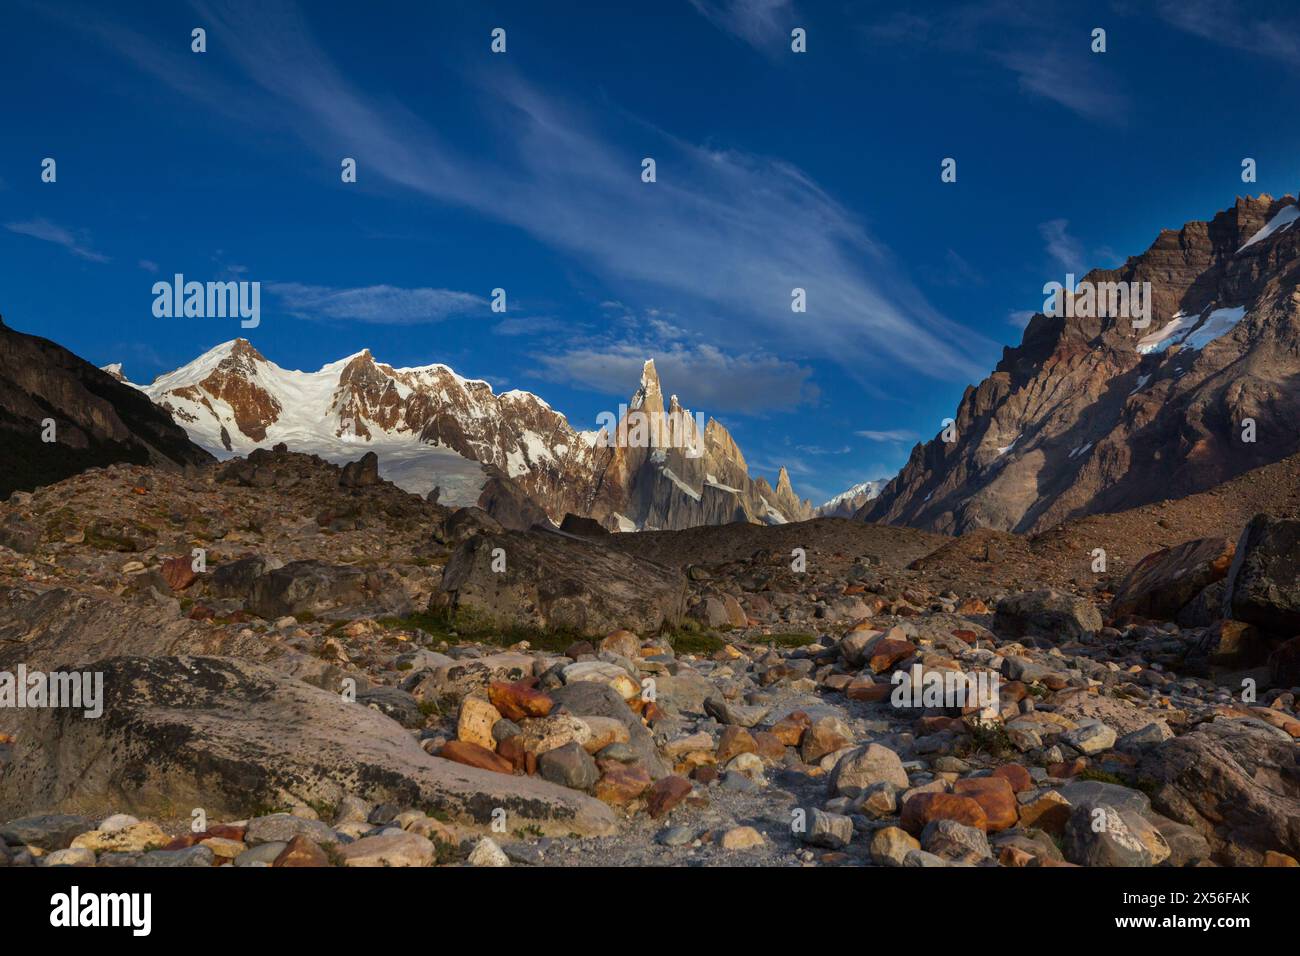 Berühmte schönen Peak Cerro Torre in Patagonien, Argentinien. Schöne Berge Landschaften in Südamerika. Stockfoto